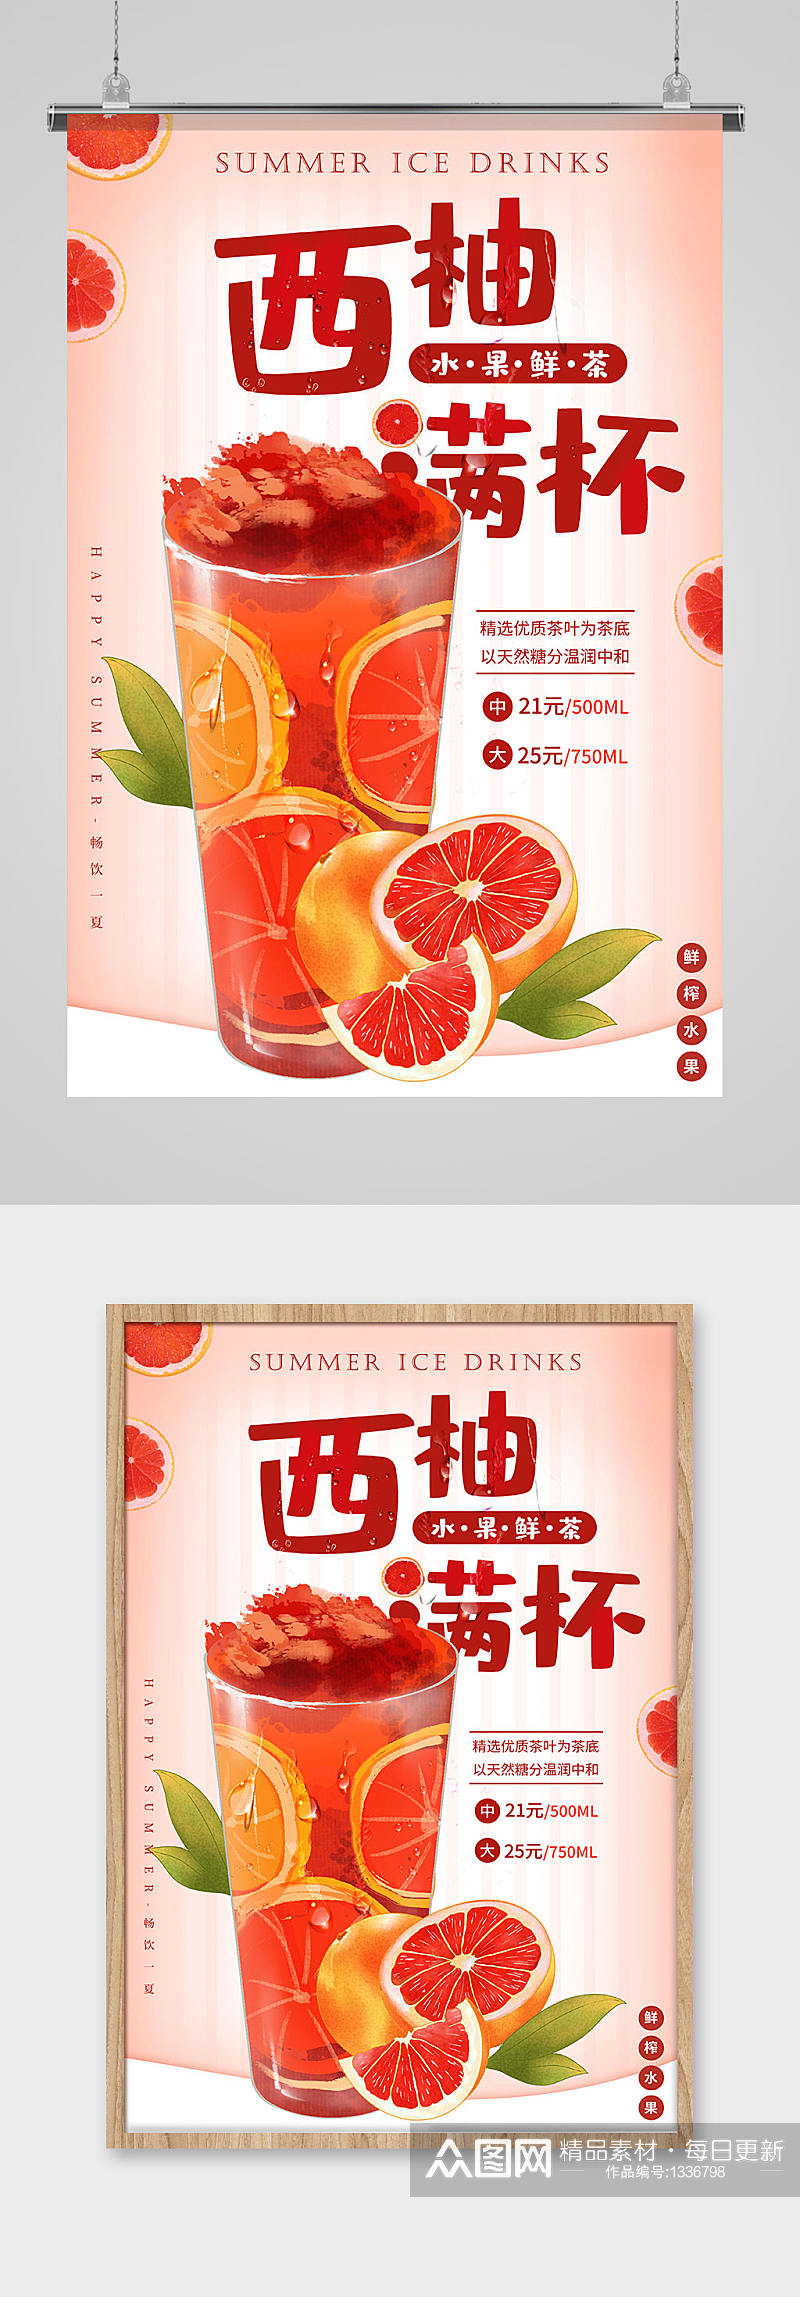 夏季水果冰饮系列海报素材